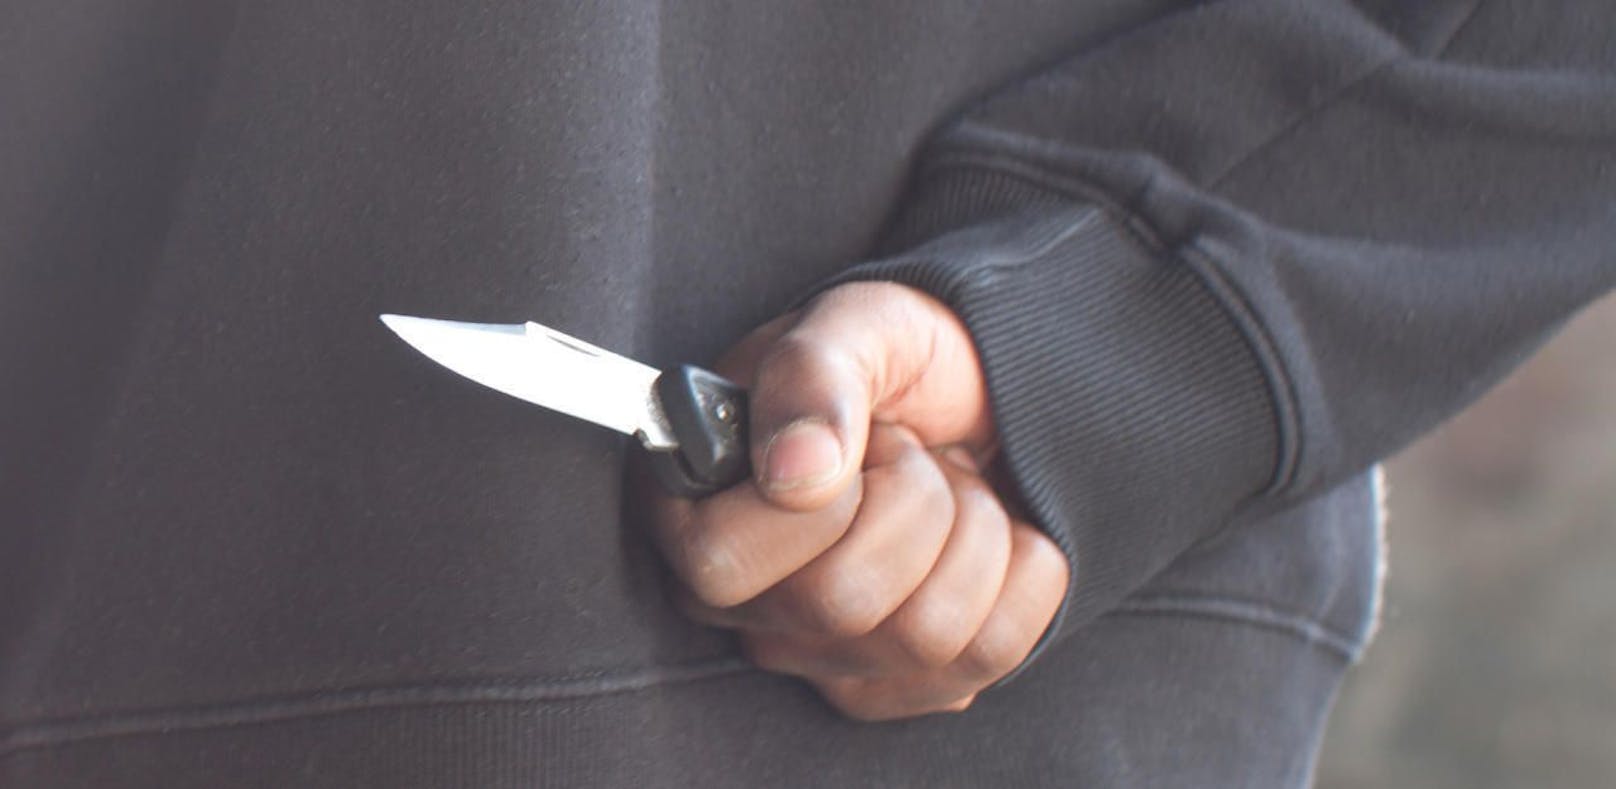 Asylwerber geht mit Messer auf Polizisten los